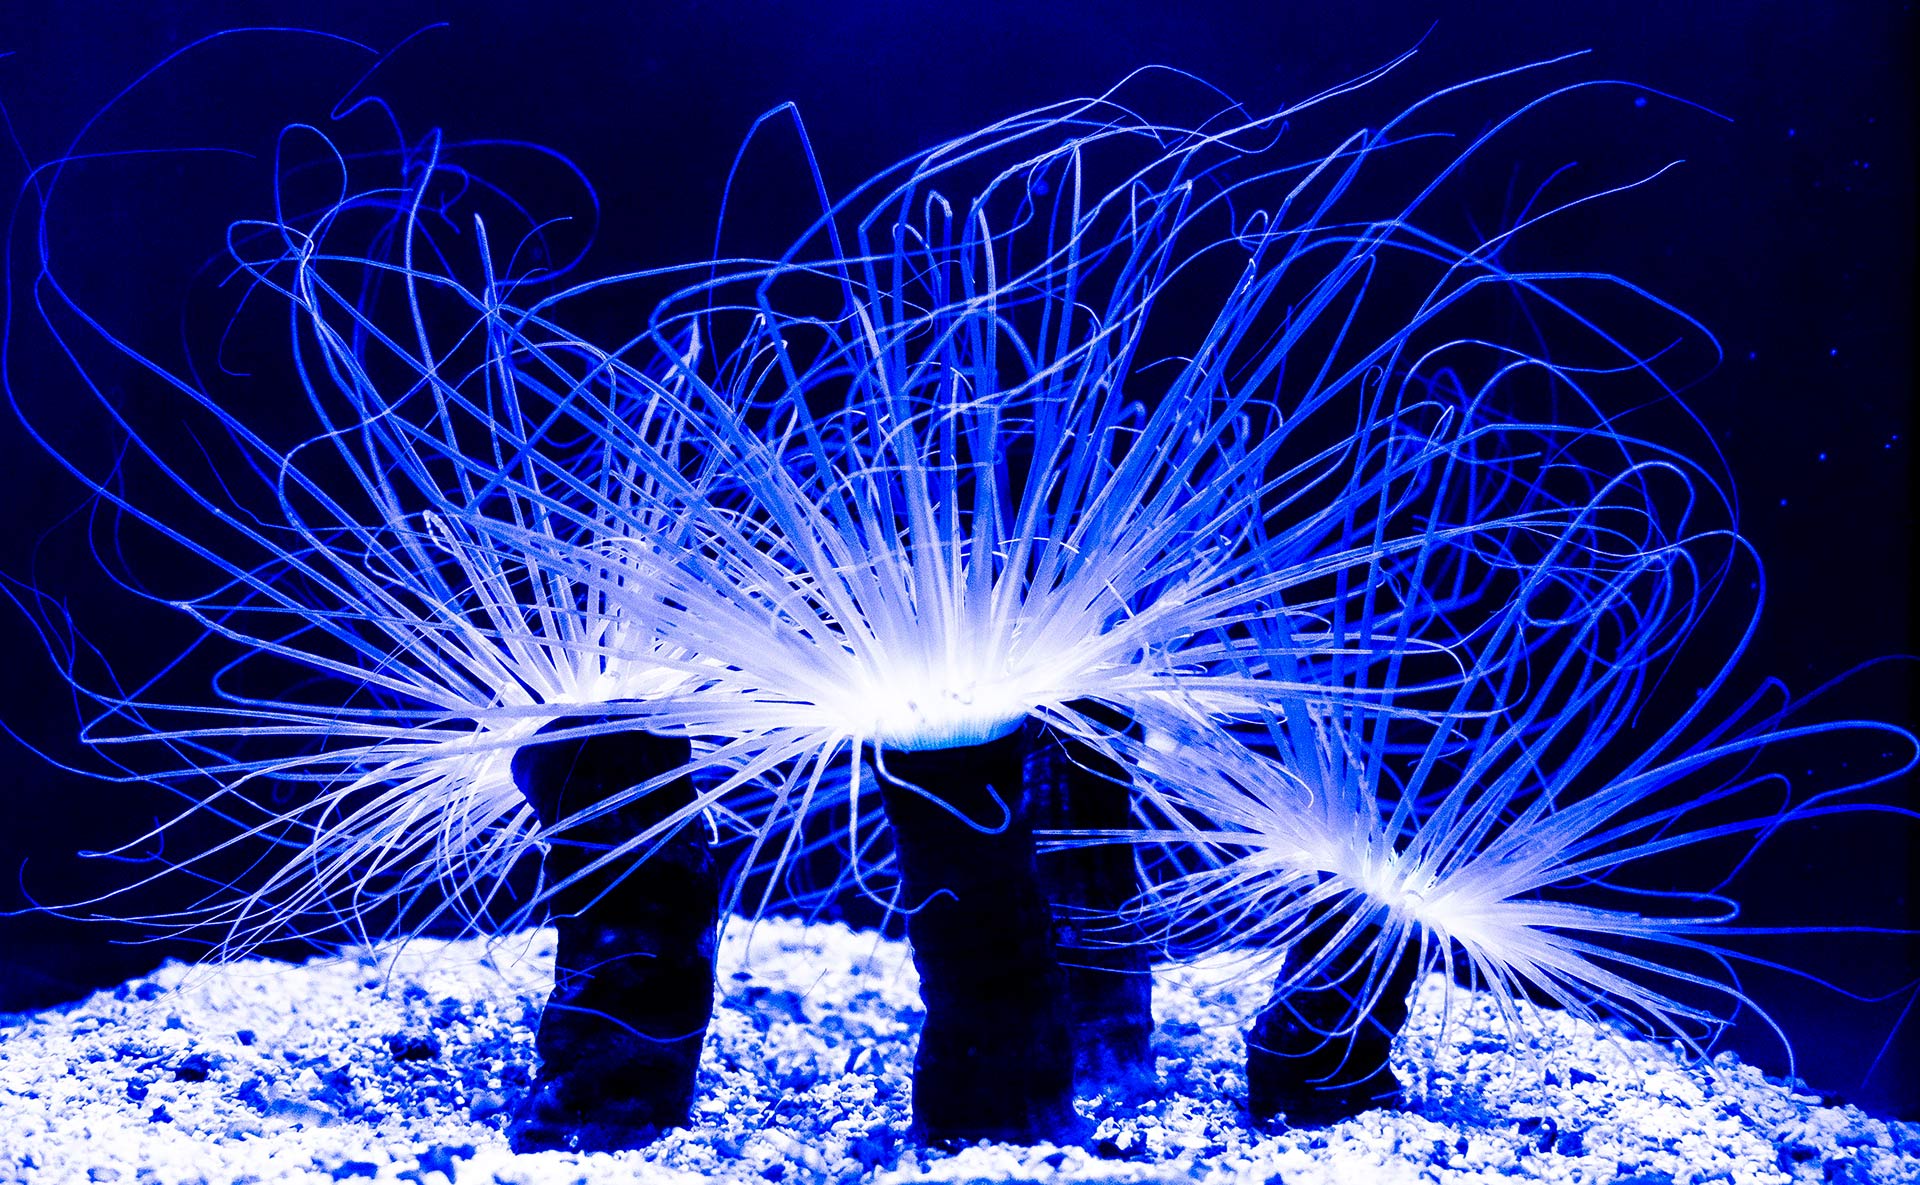 Sea Anemones at the Aquarium of the Pacific Long Beach, Ca ©2021